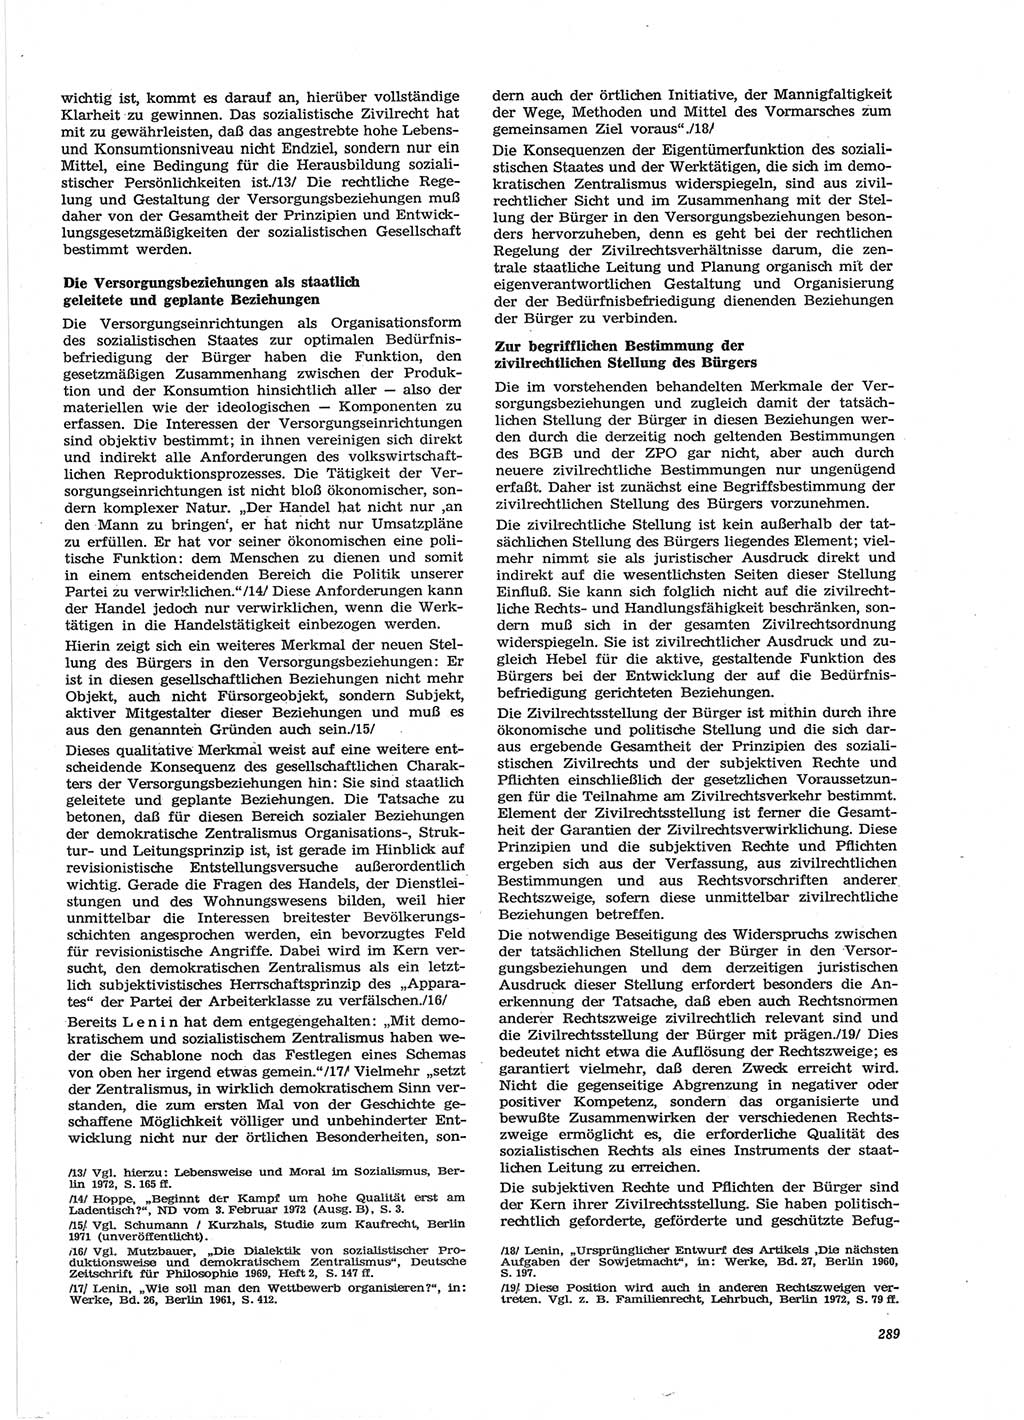 Neue Justiz (NJ), Zeitschrift für Recht und Rechtswissenschaft [Deutsche Demokratische Republik (DDR)], 28. Jahrgang 1974, Seite 289 (NJ DDR 1974, S. 289)